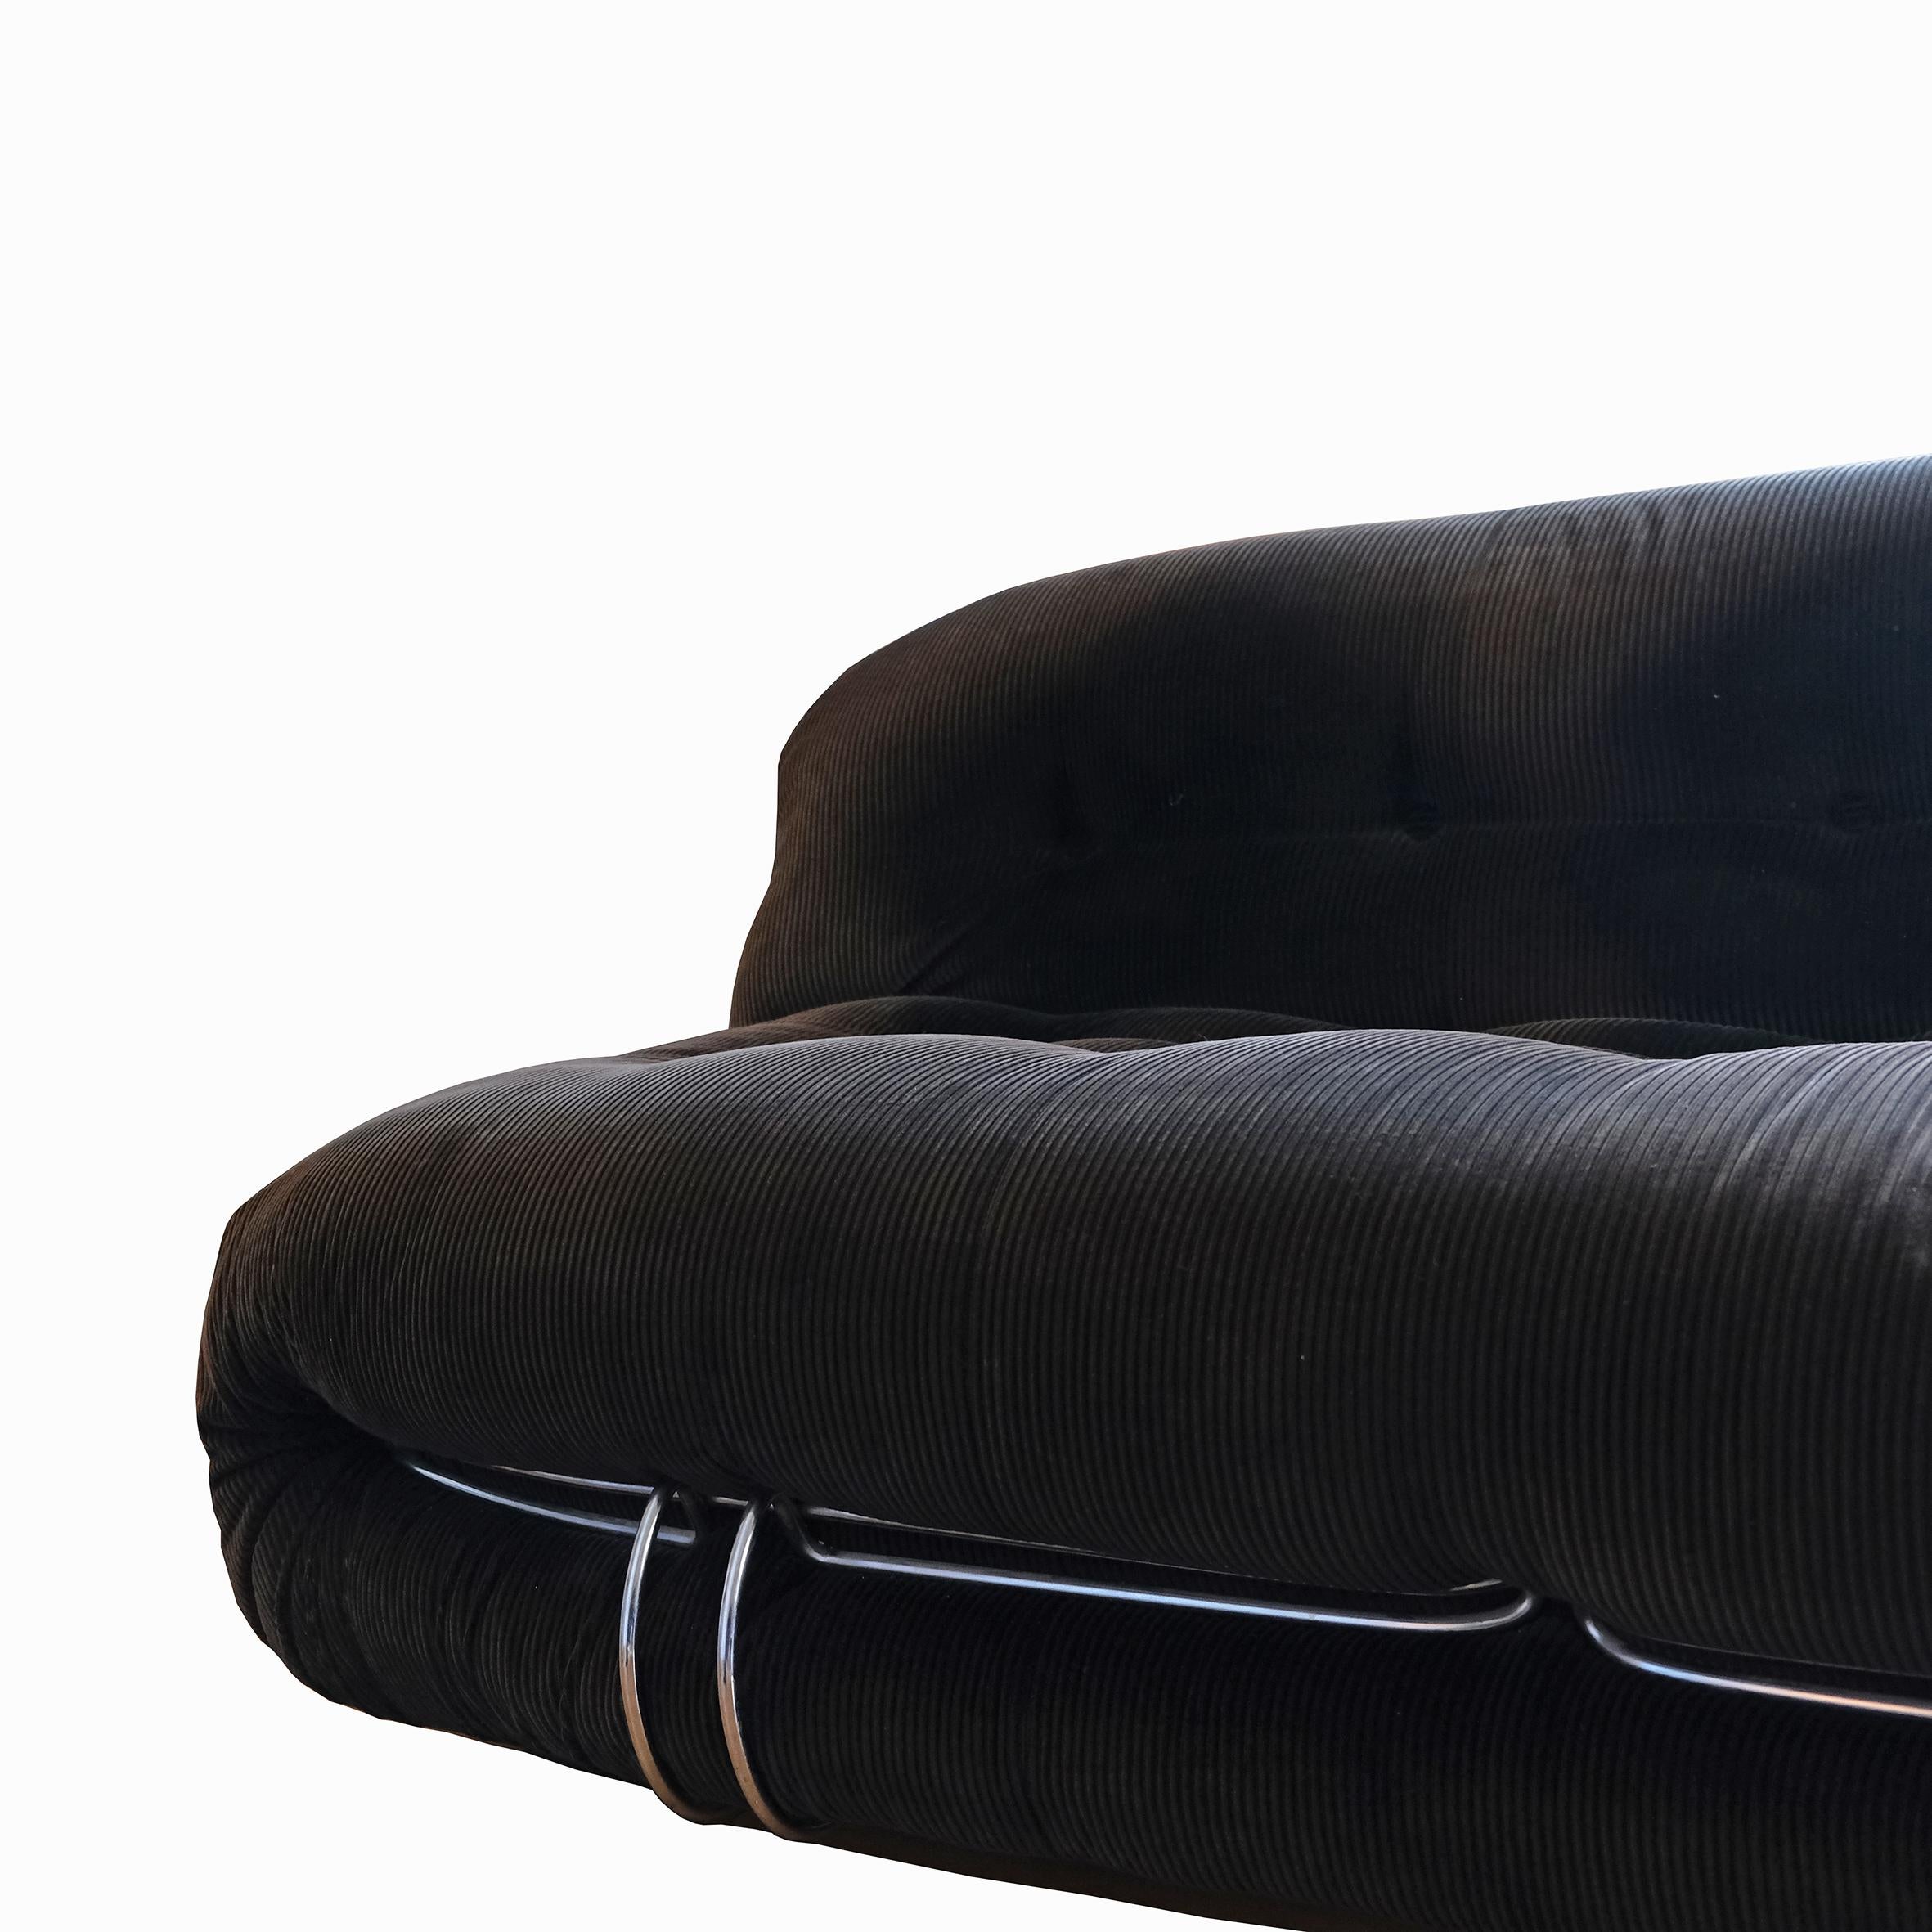 Italian Afra & Tobia Scarpa, A large sofa, 